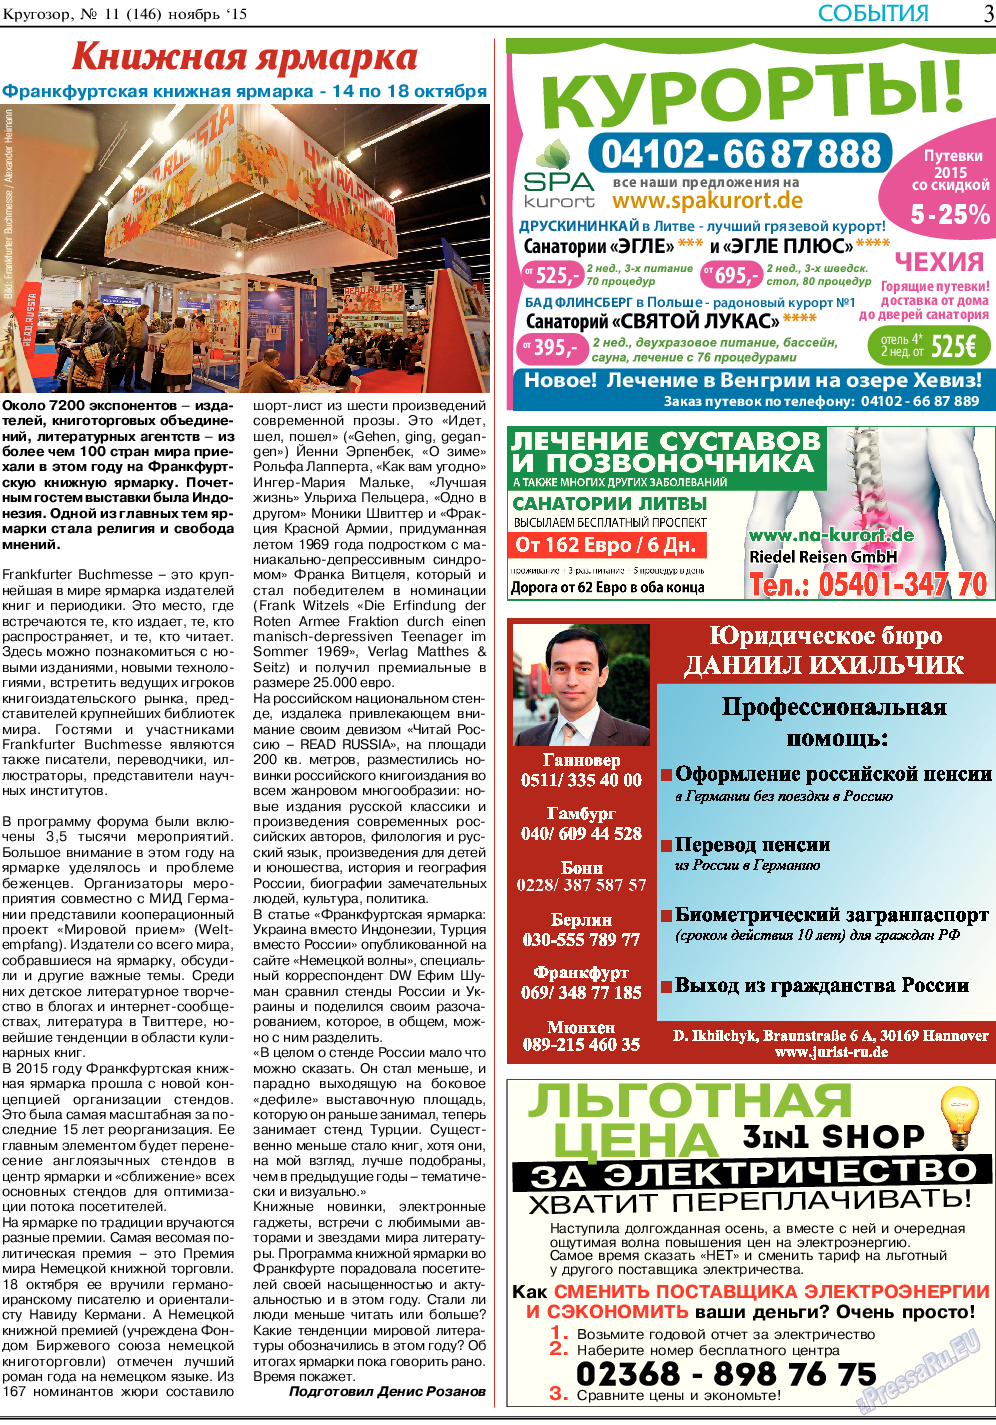 Кругозор, газета. 2015 №11 стр.3